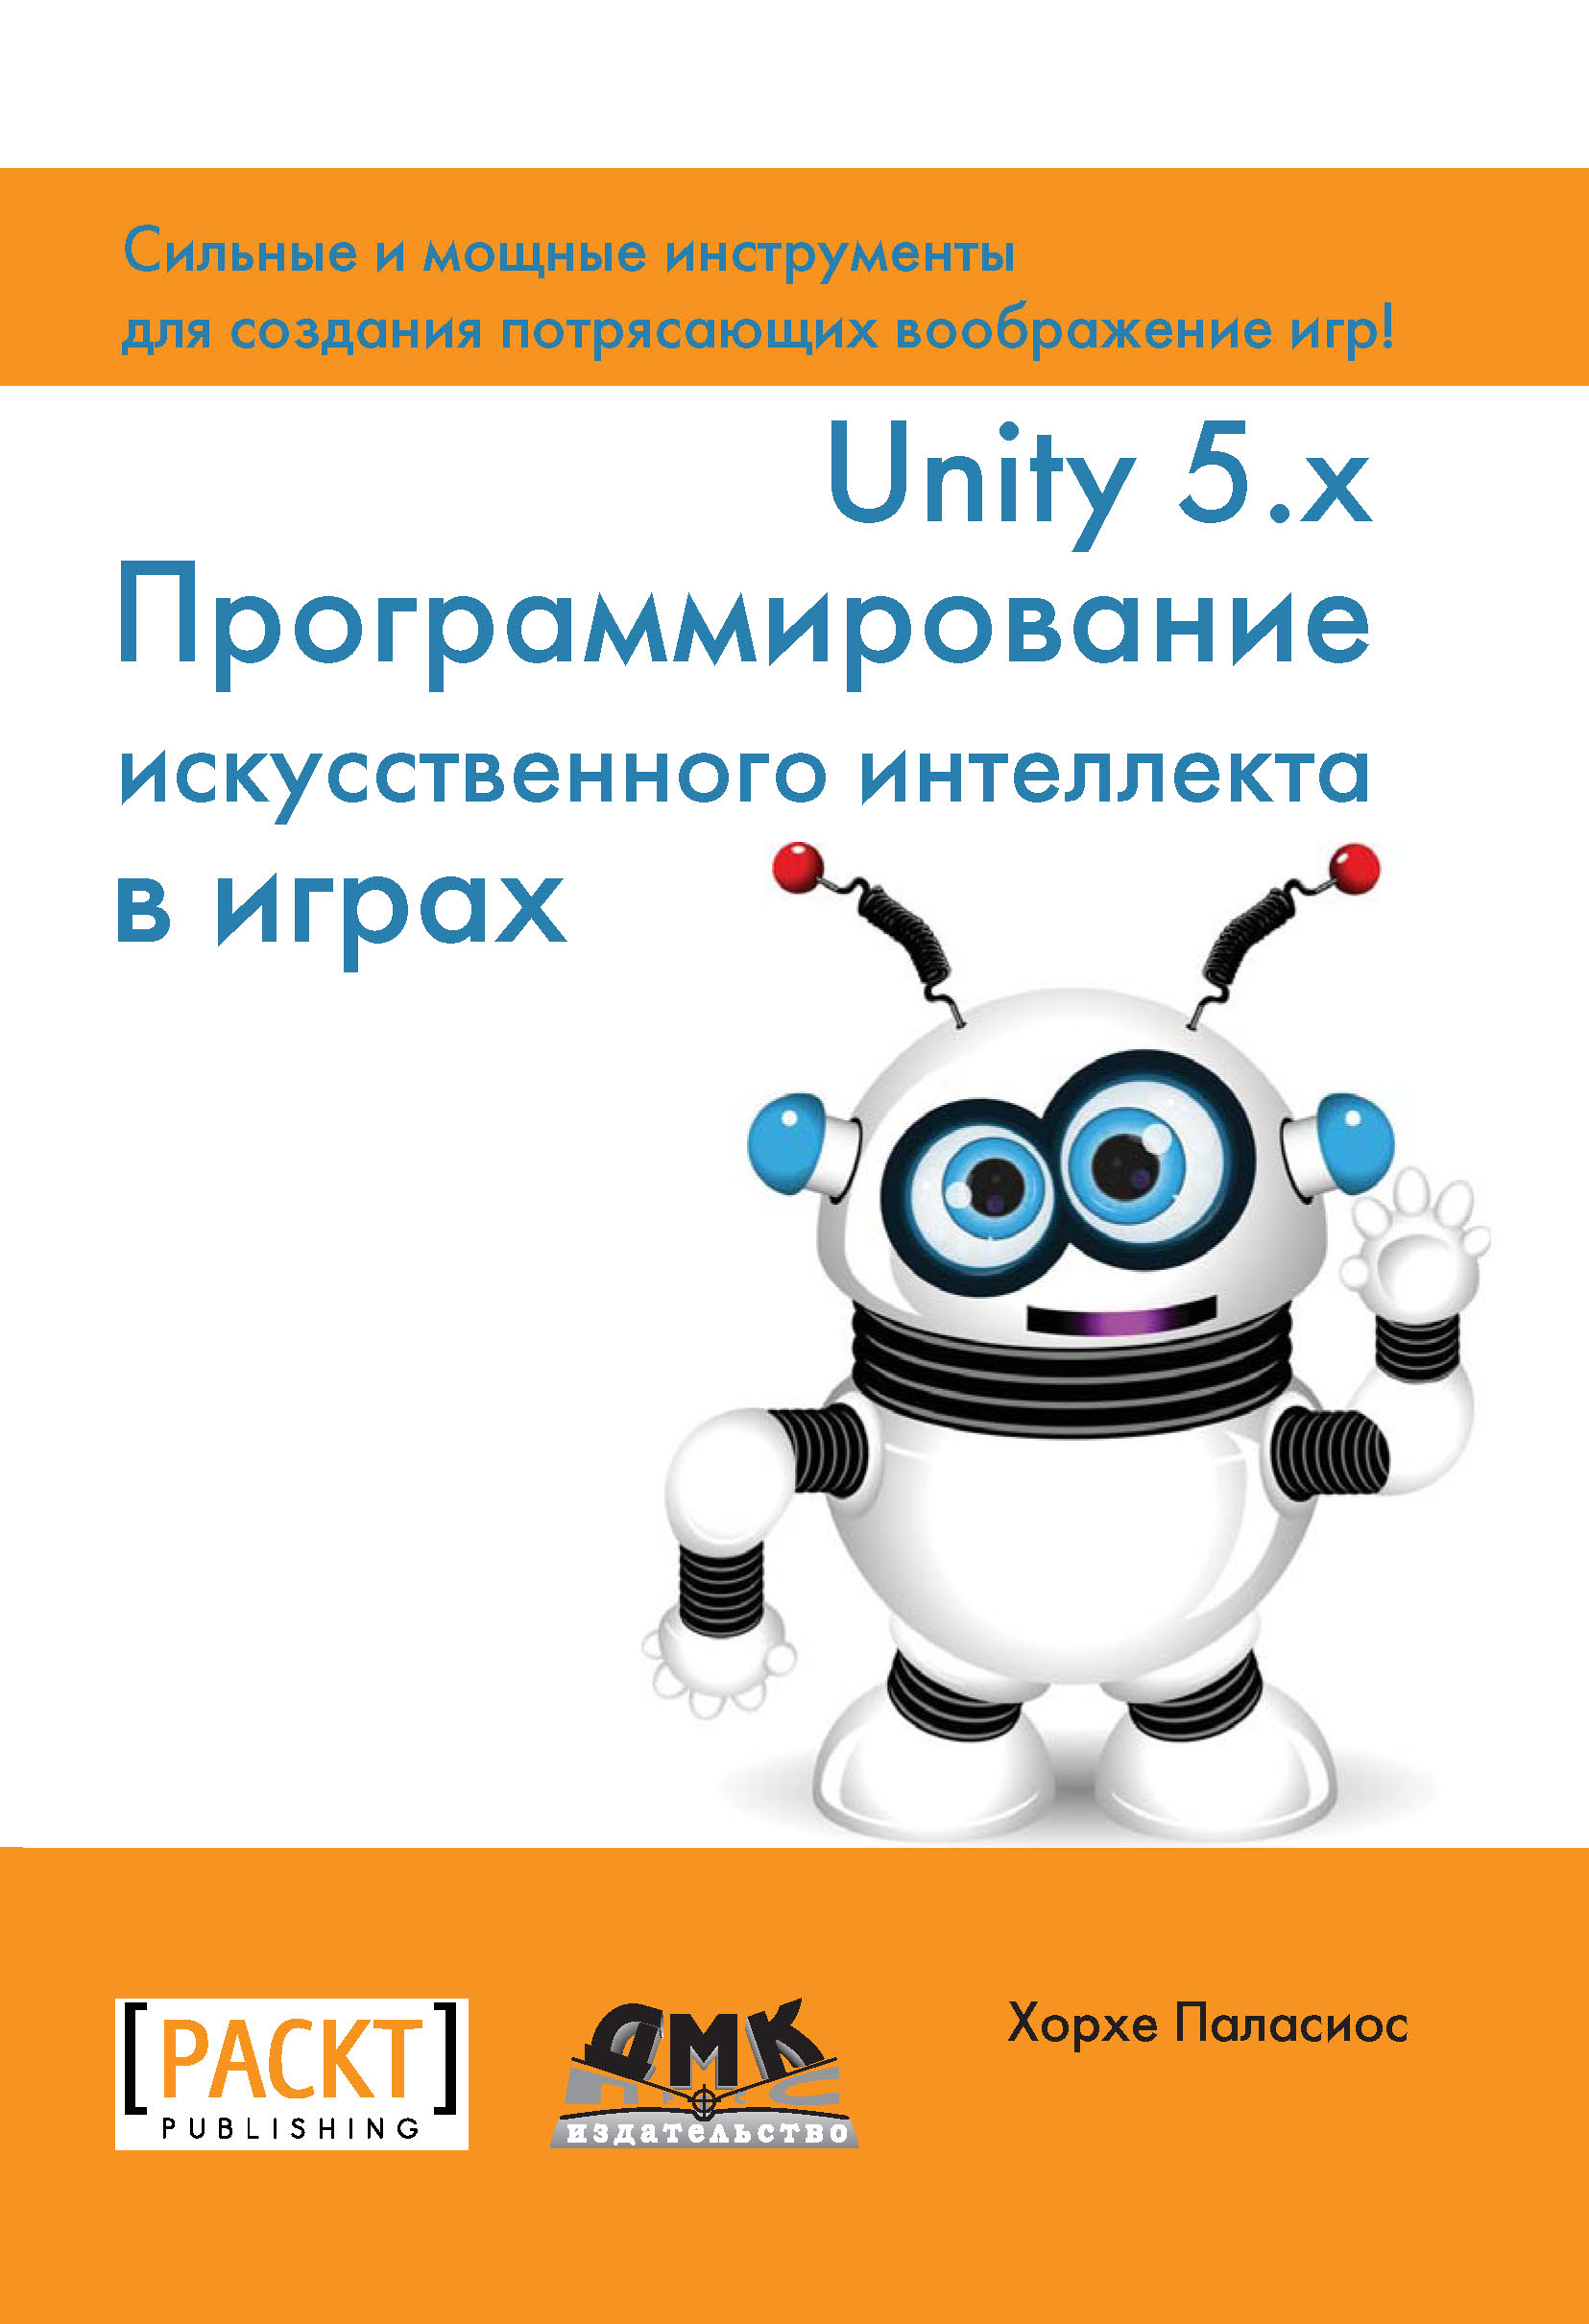 Unity 5.x.Программирование искусственного интеллекта в играх